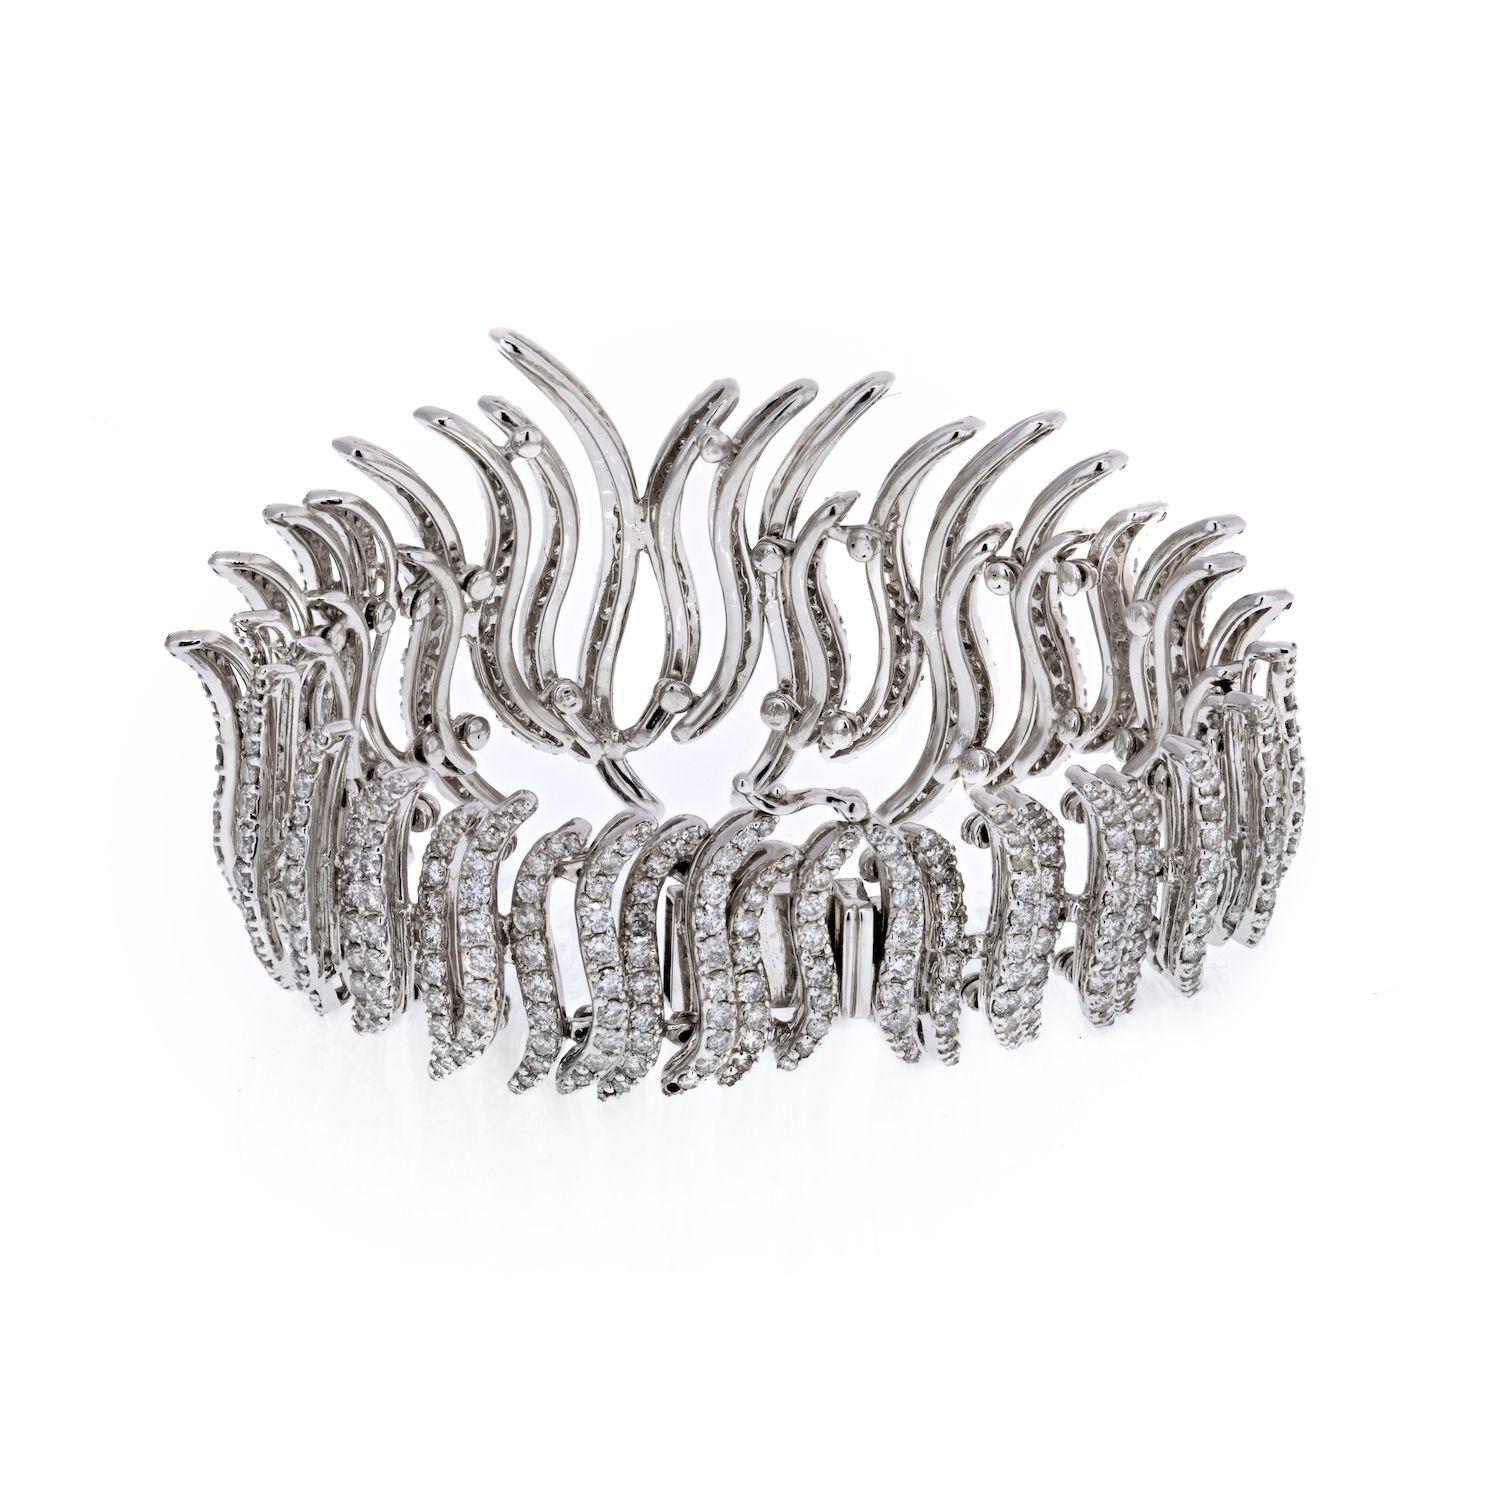 Cet incroyable bracelet de diamants en bandes sculptées est d'une conception et d'un style extrêmement exquis. Cette pièce à couper le souffle est somptueusement conçue en or blanc 18 carats étincelant et ornée de 18 cts de diamants ronds